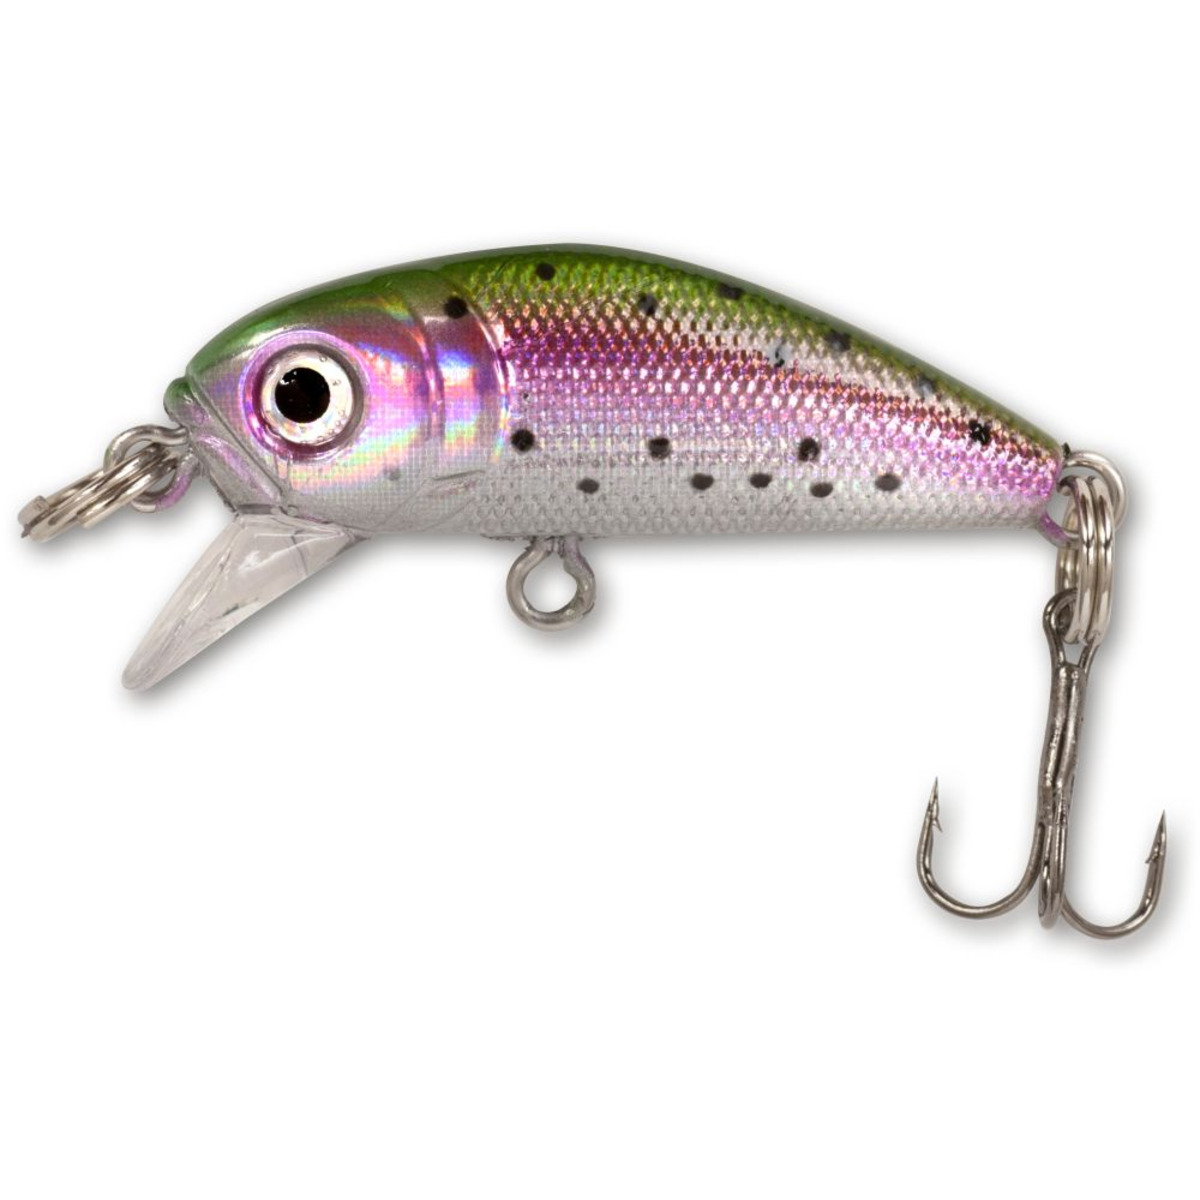 Zebco Gitec Trout - 2,20 g - rainbow trout